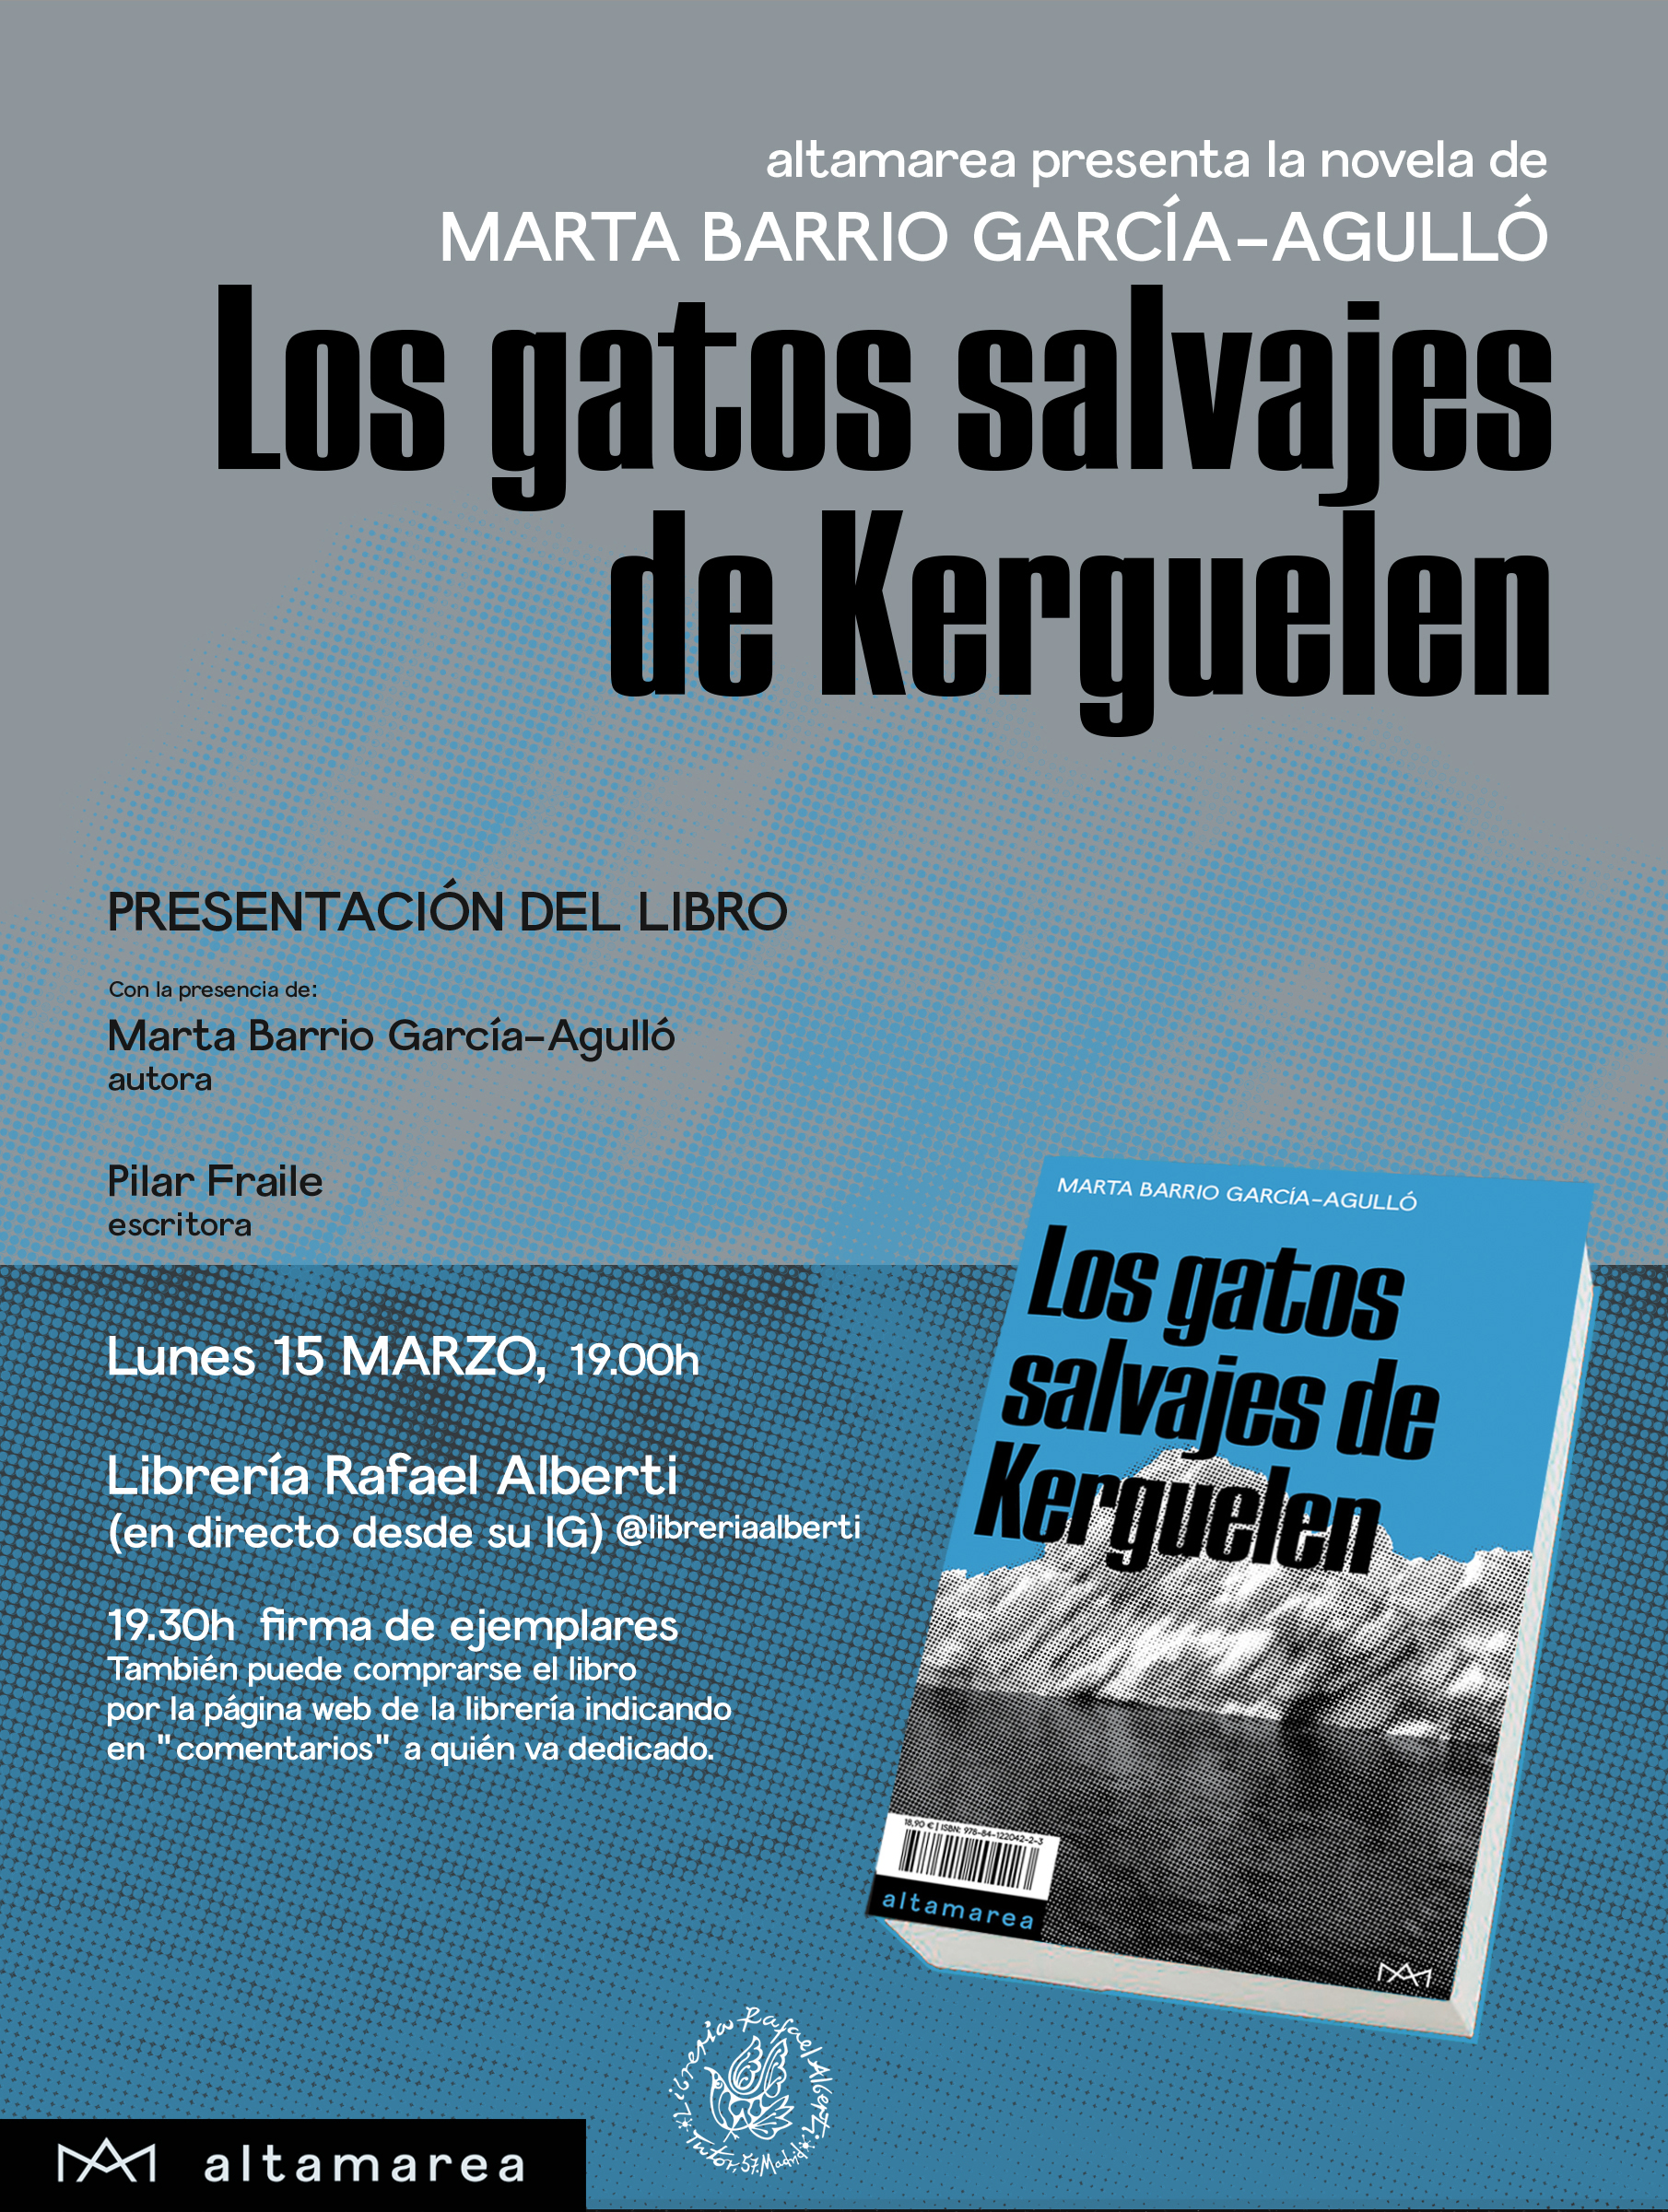 MARTA BARRIO GARCÍA-AGULLÓ presenta y firma 'Los gatos de Kerguelen' (Altamarea)